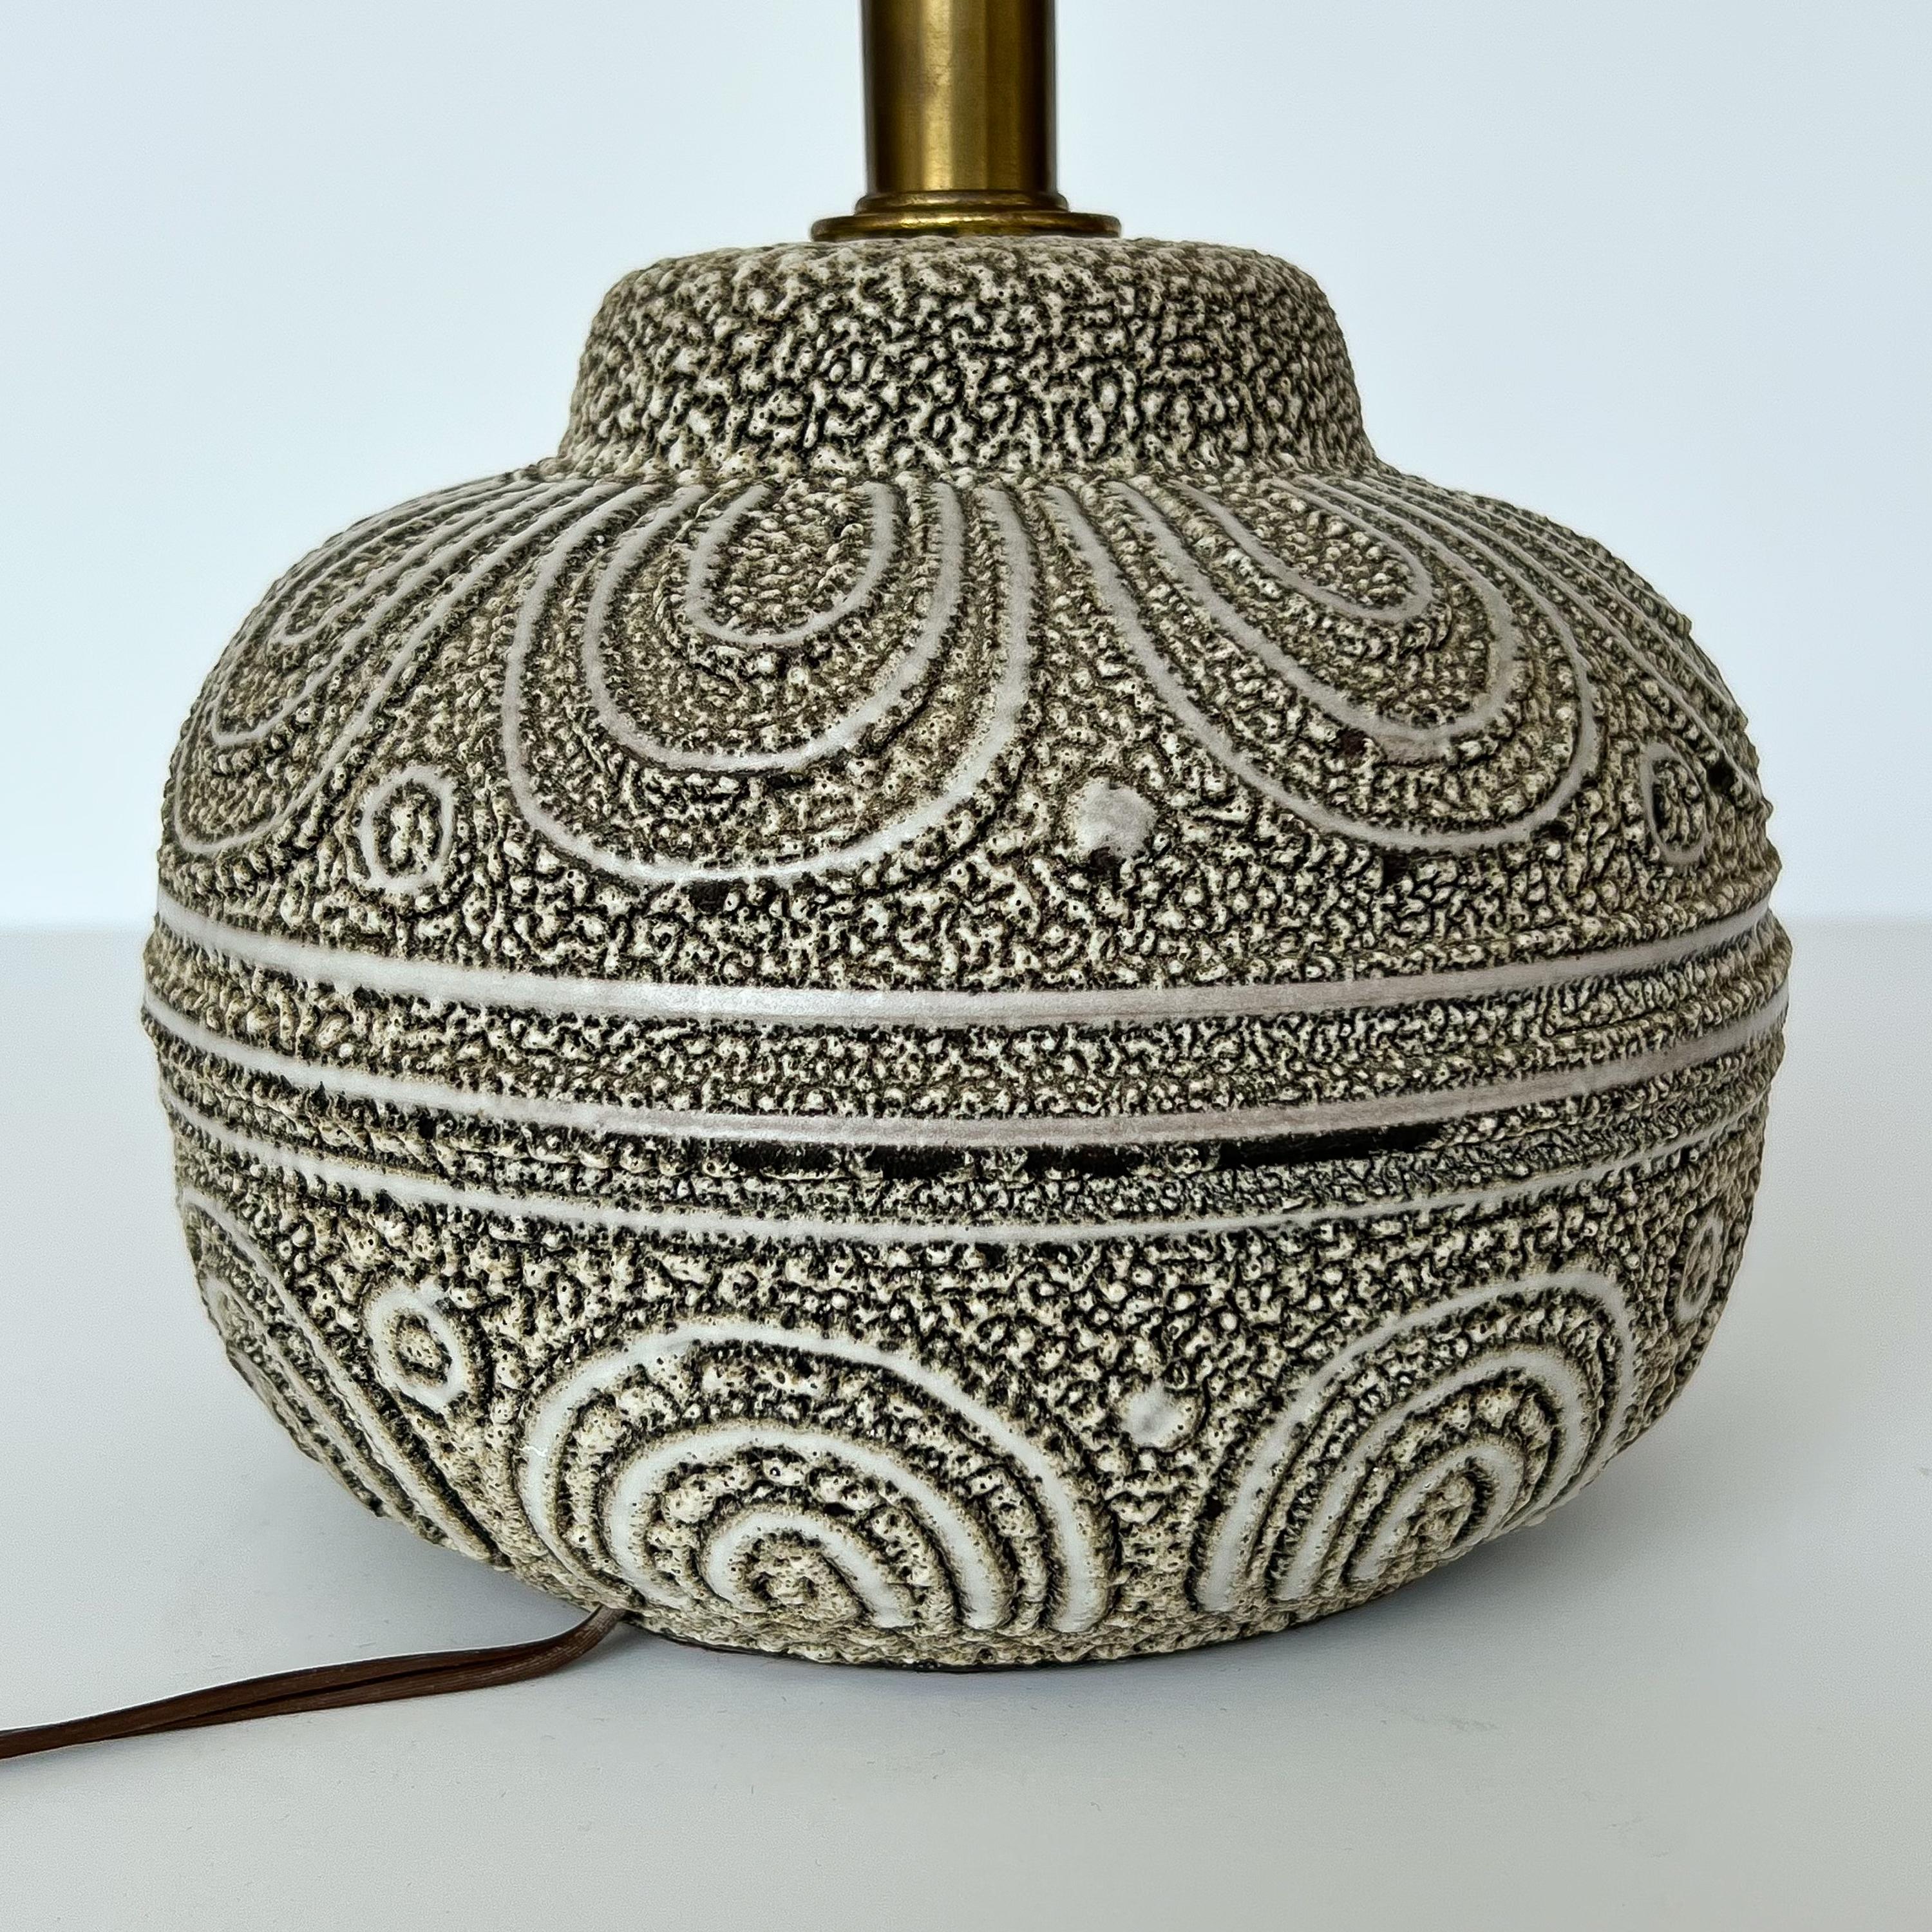 Lee Rosen Design Technics Textured Ceramic Table Lamp 2